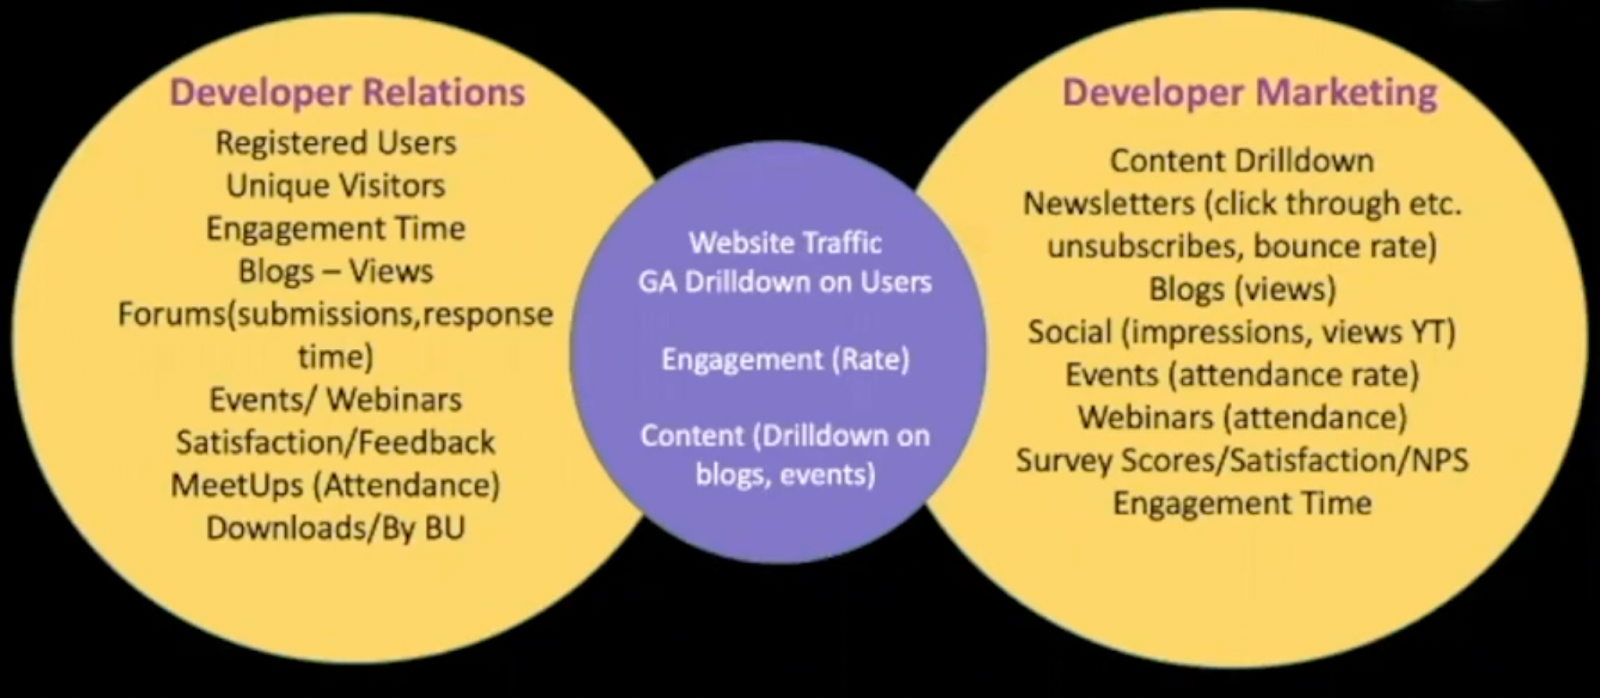 developer relations and developer marketing metrics